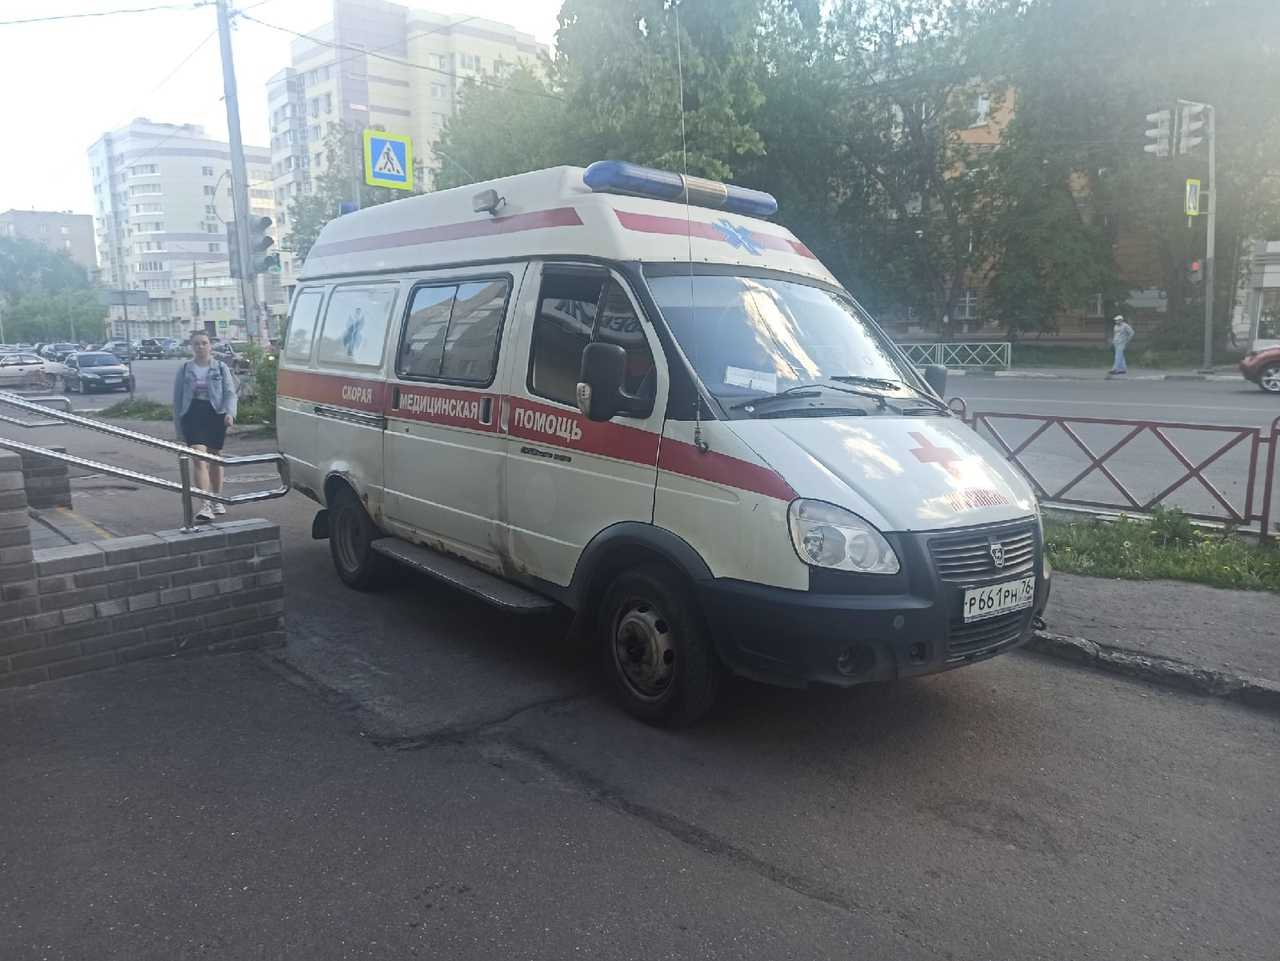 У коронавирусного госпиталя в Ярославле выстроилась очередь из скорых